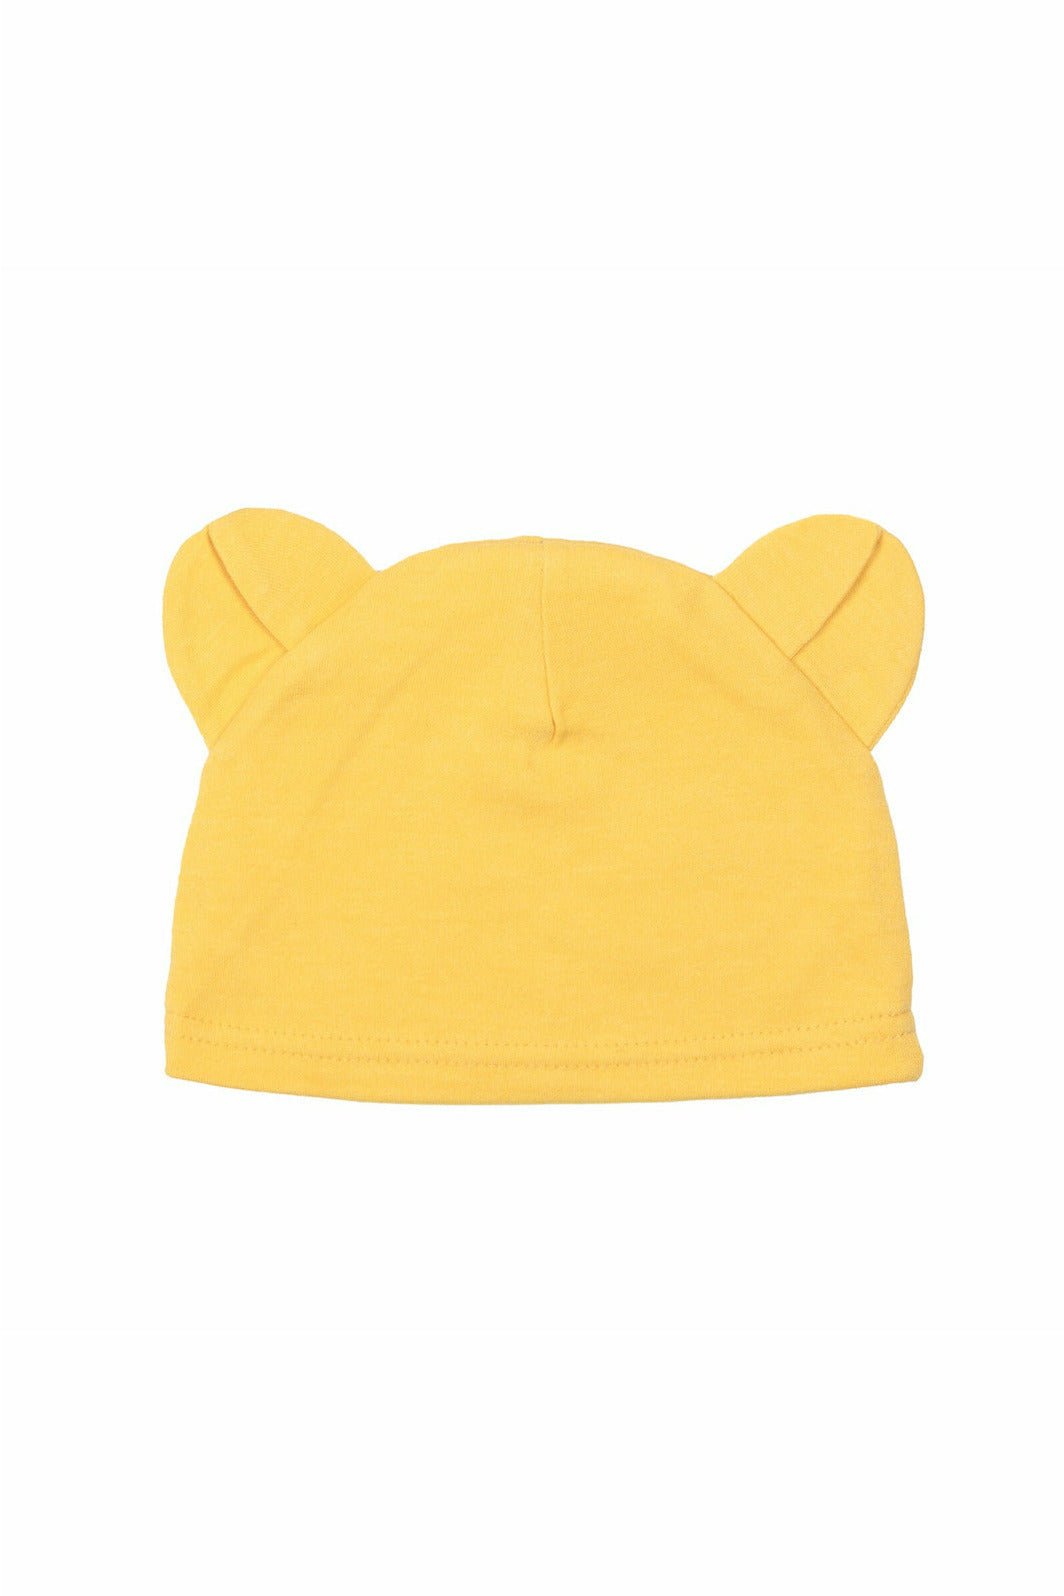 Winnie the Pooh 4 Piece Outfit Set: Bodysuit Pants Bib Hat - imagikids